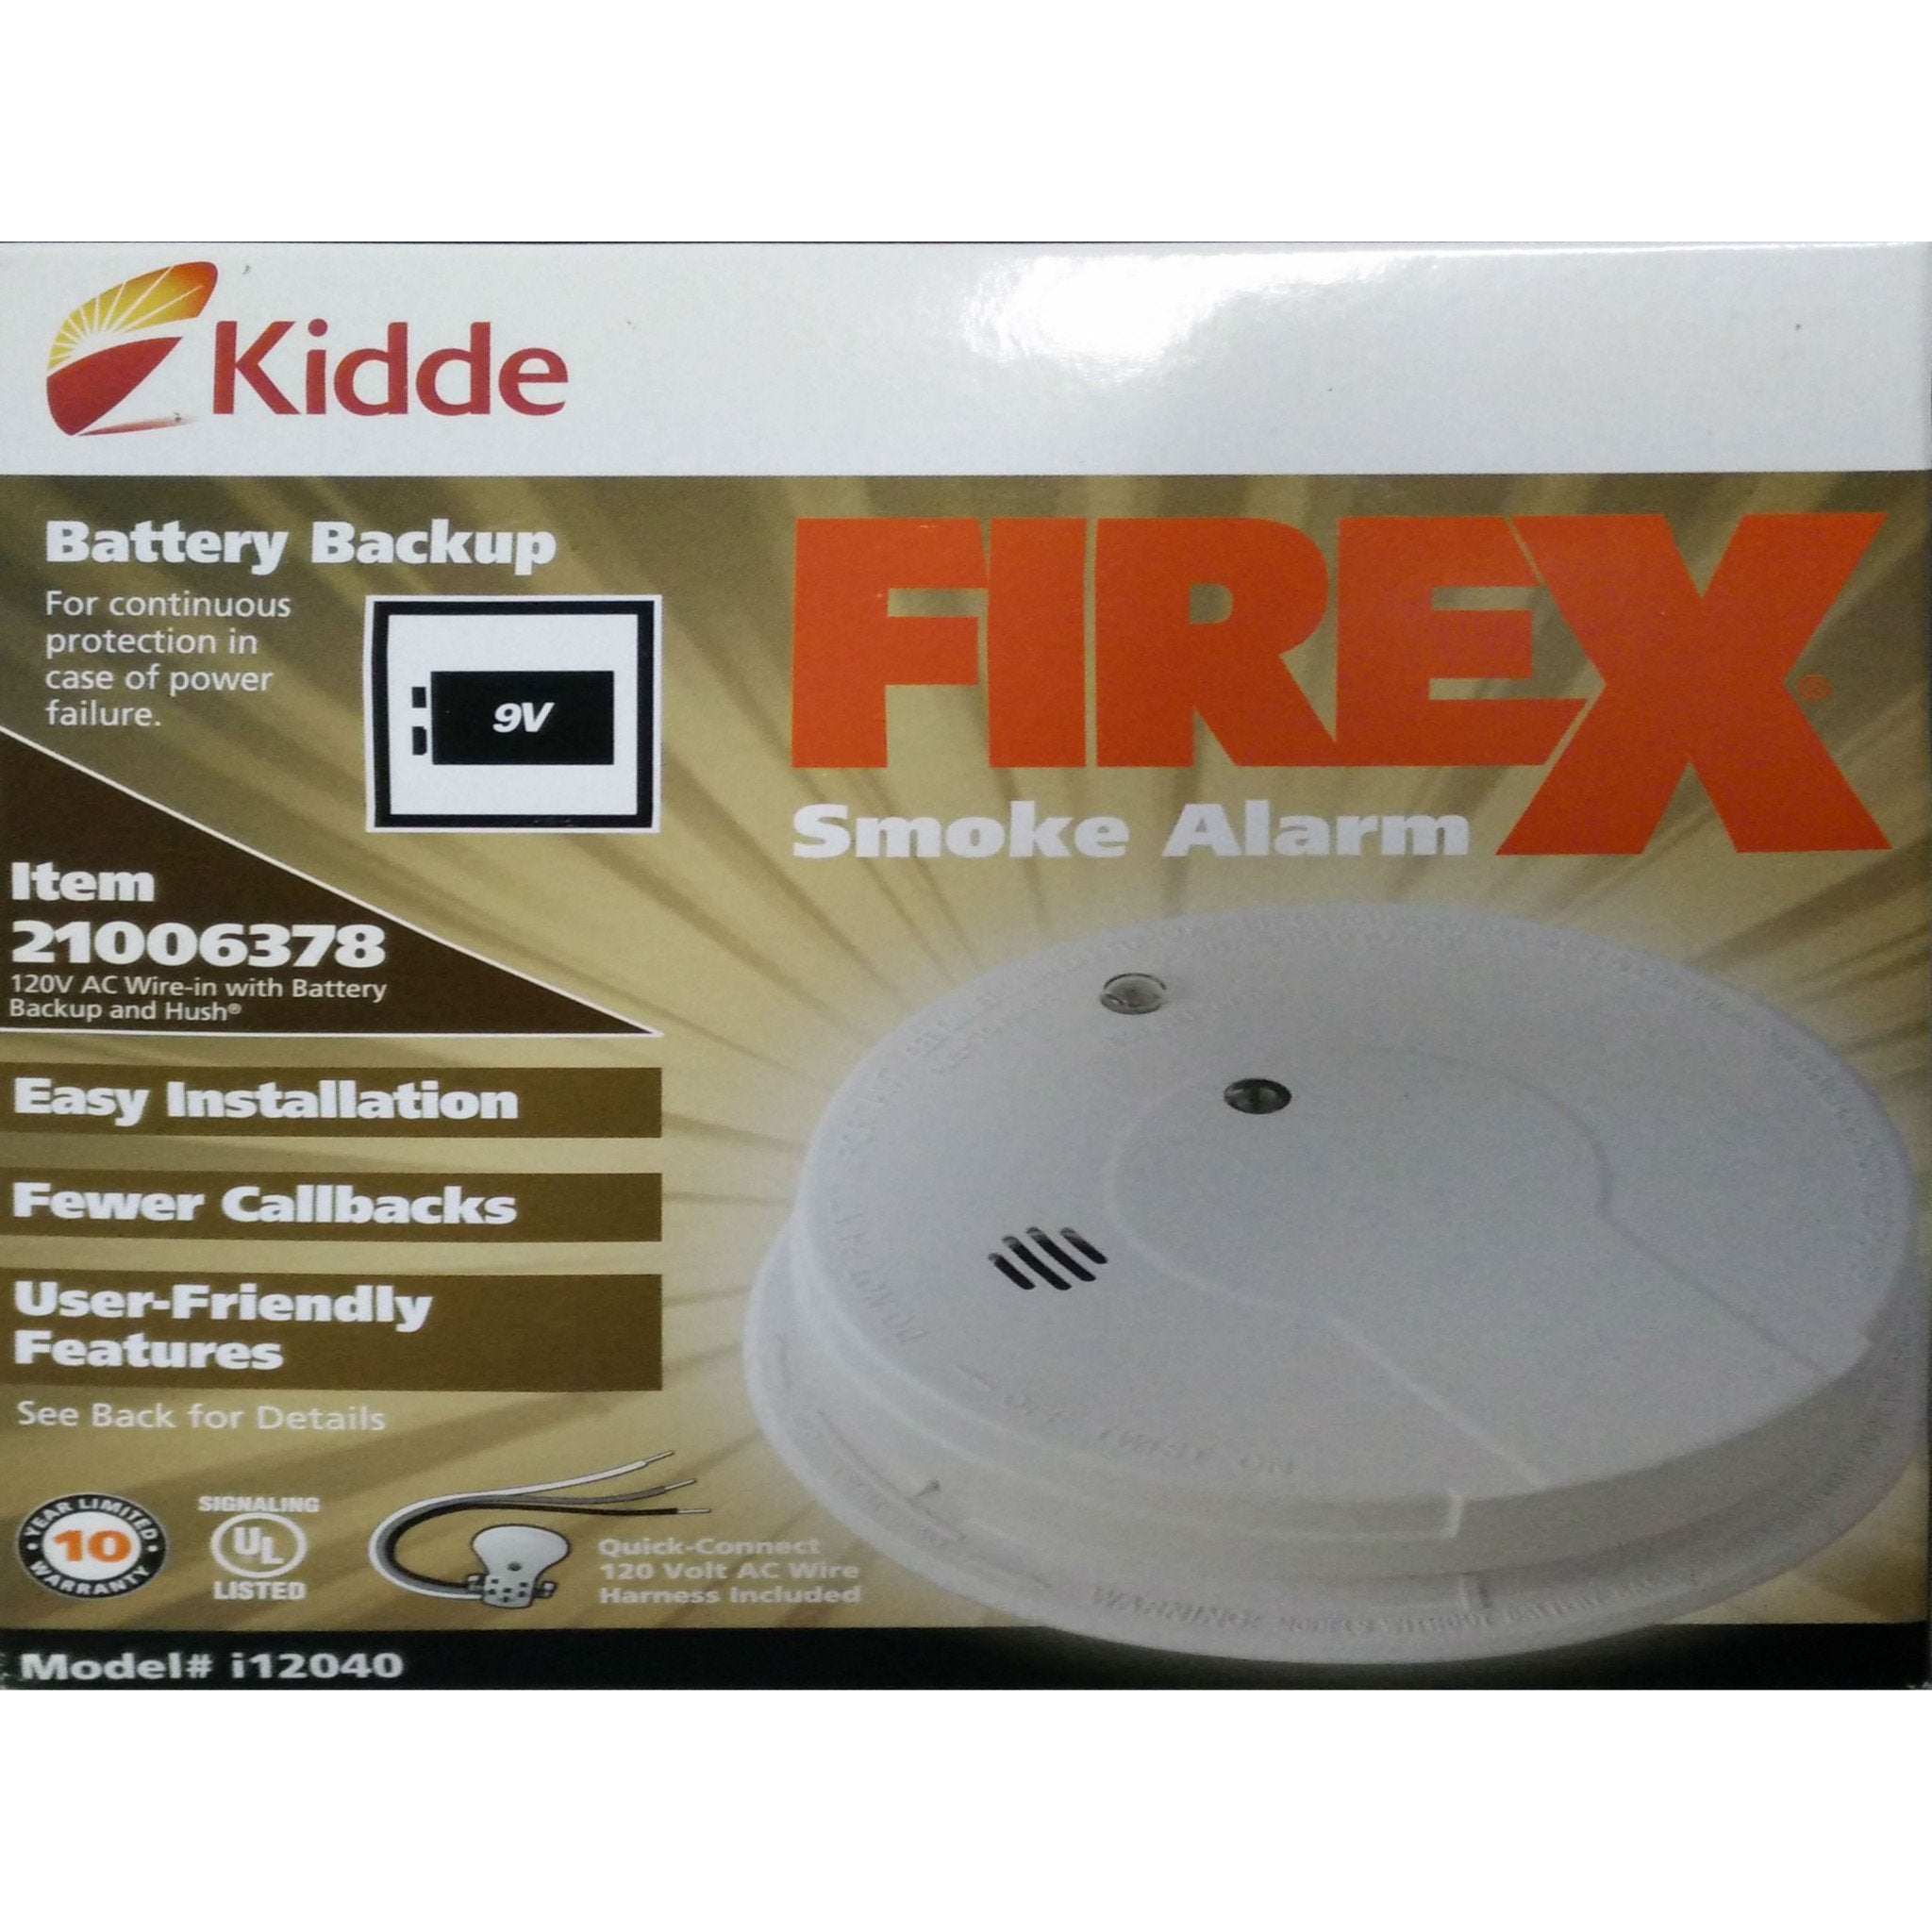 Kidde 120V AC Carbon Monoxide Detectors with Battery Back Up